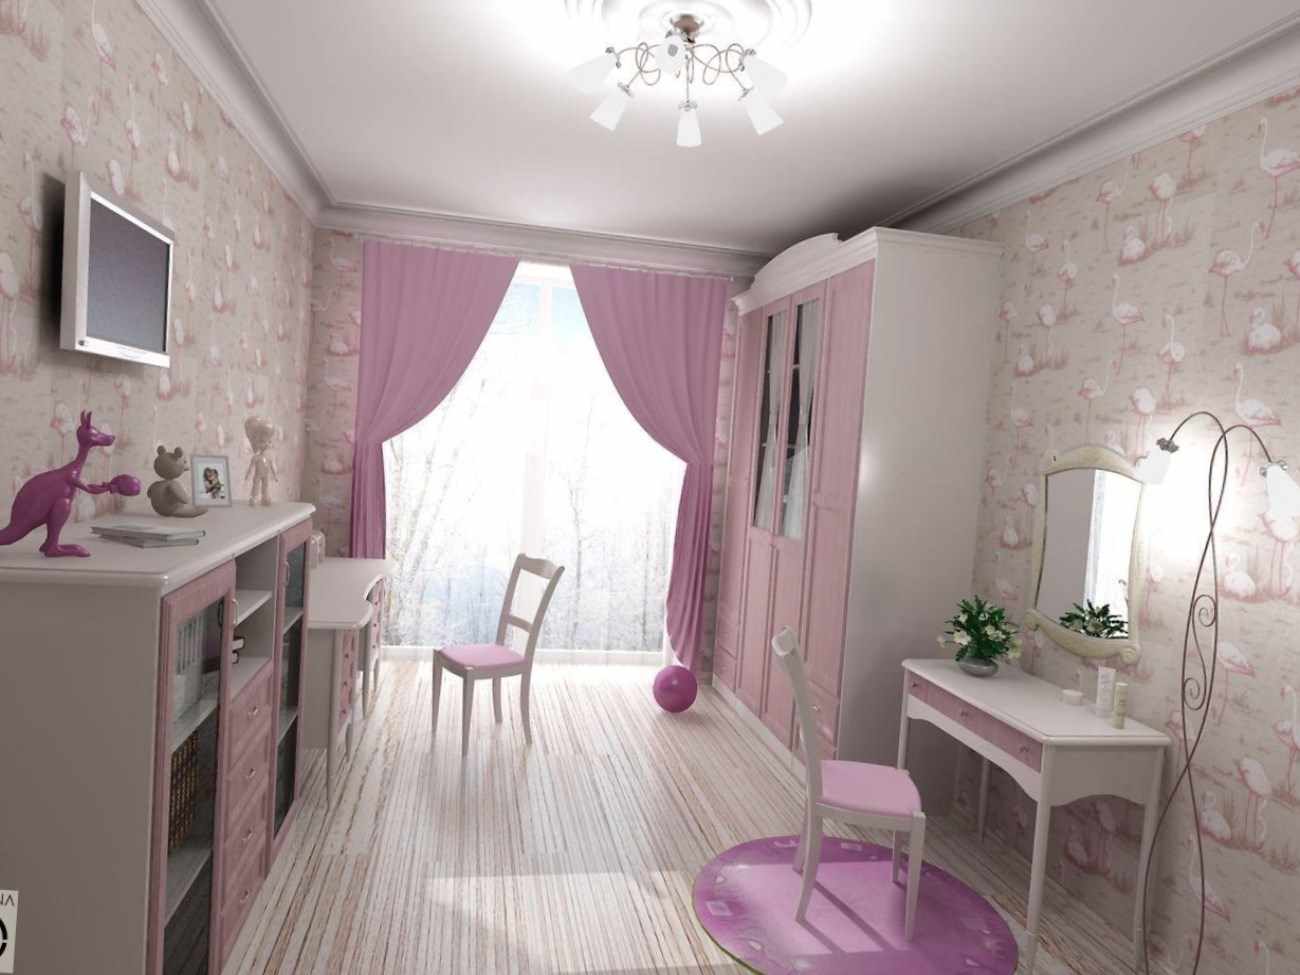 Un esempio dello stile luminoso di una stanza per bambini per una ragazza